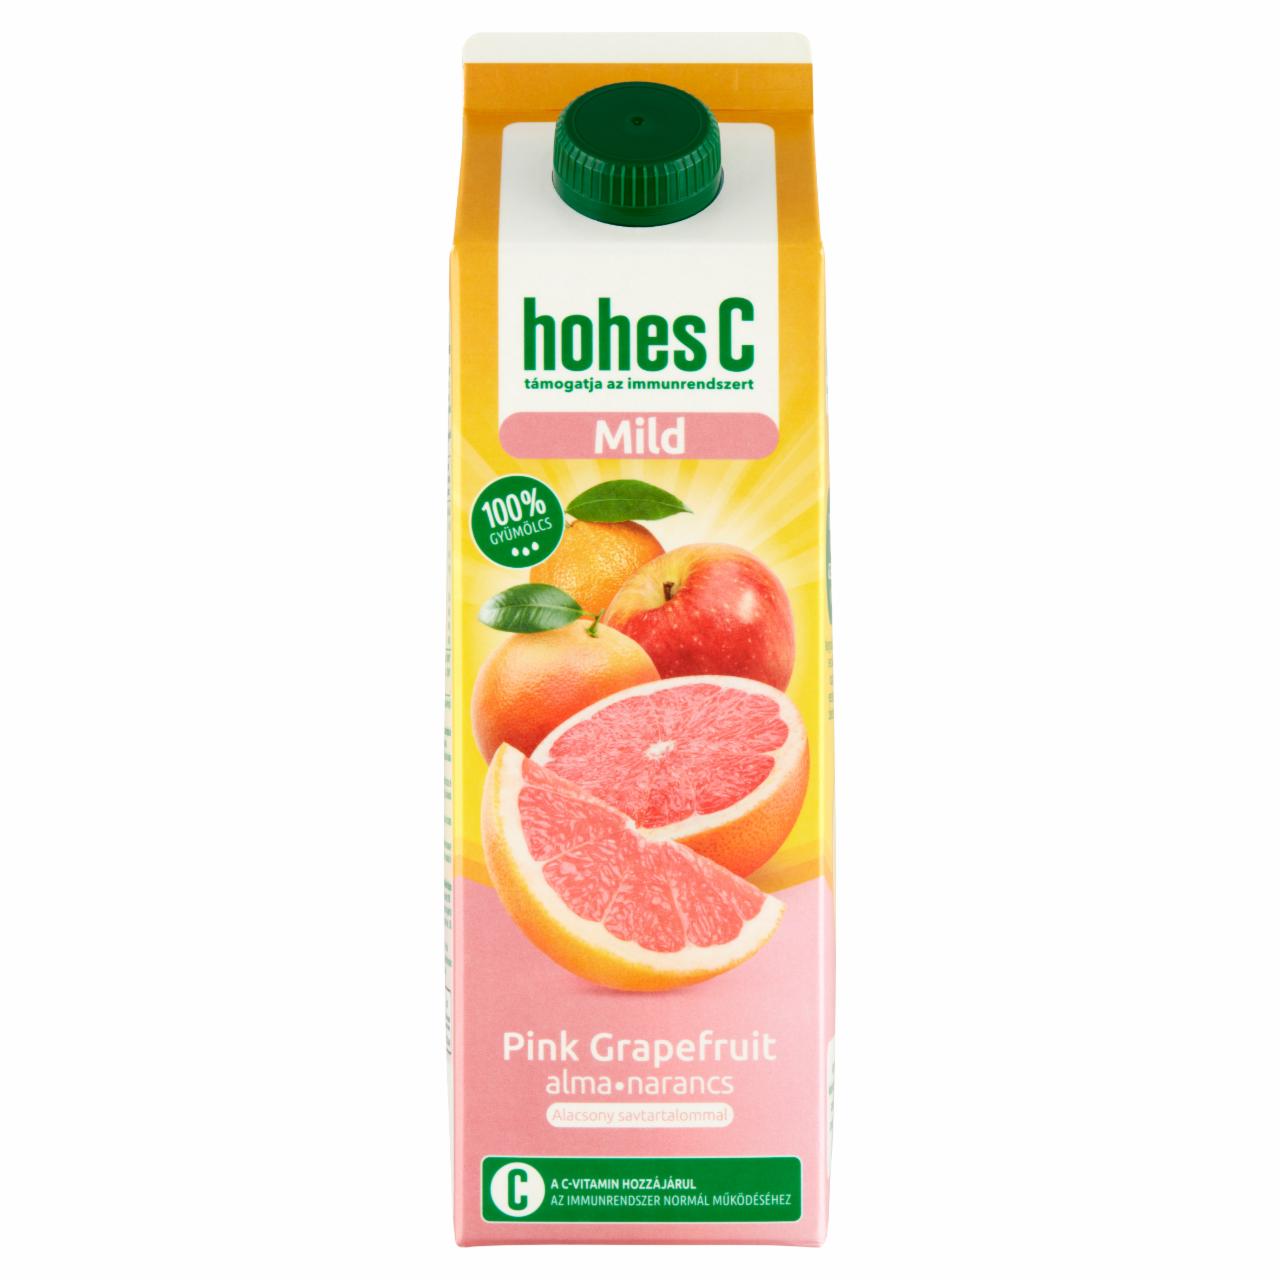 Képek - Hohes C Mild 100% pink grapefruit-alma-narancs-acerola vegyes gyümölcslé 1 l